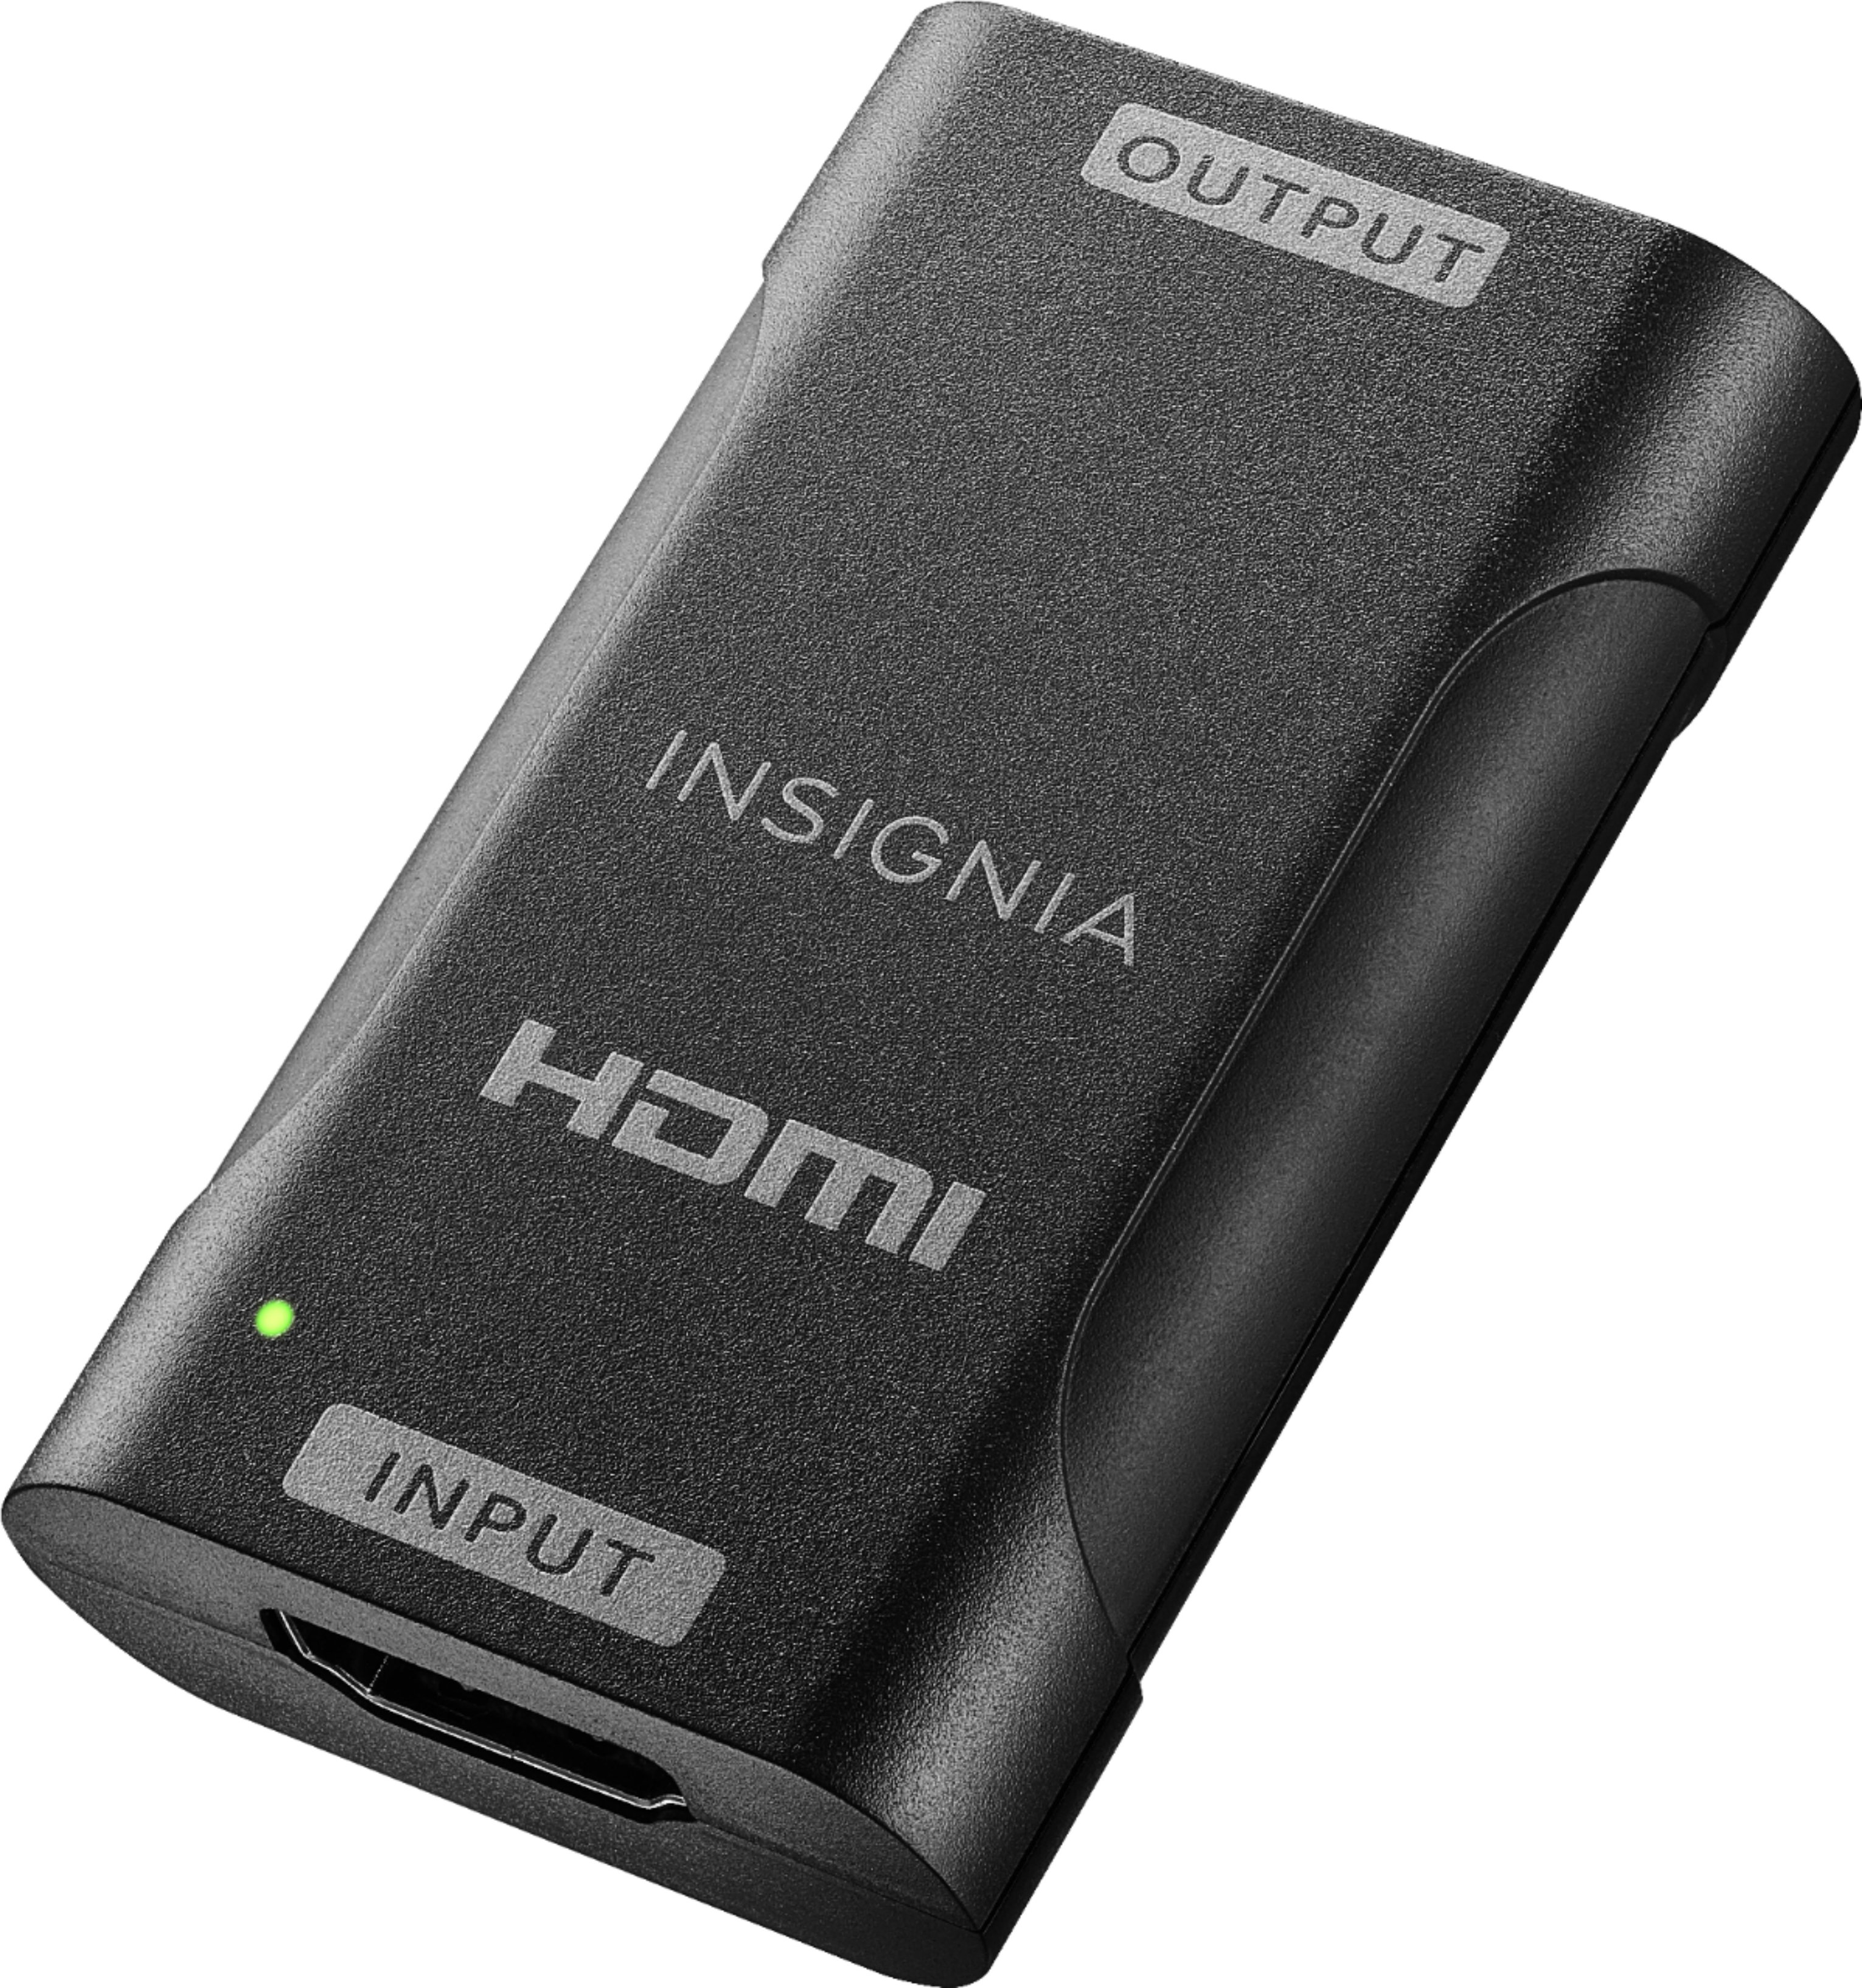 Insignia™ - HDMI Cable Repeater - Black